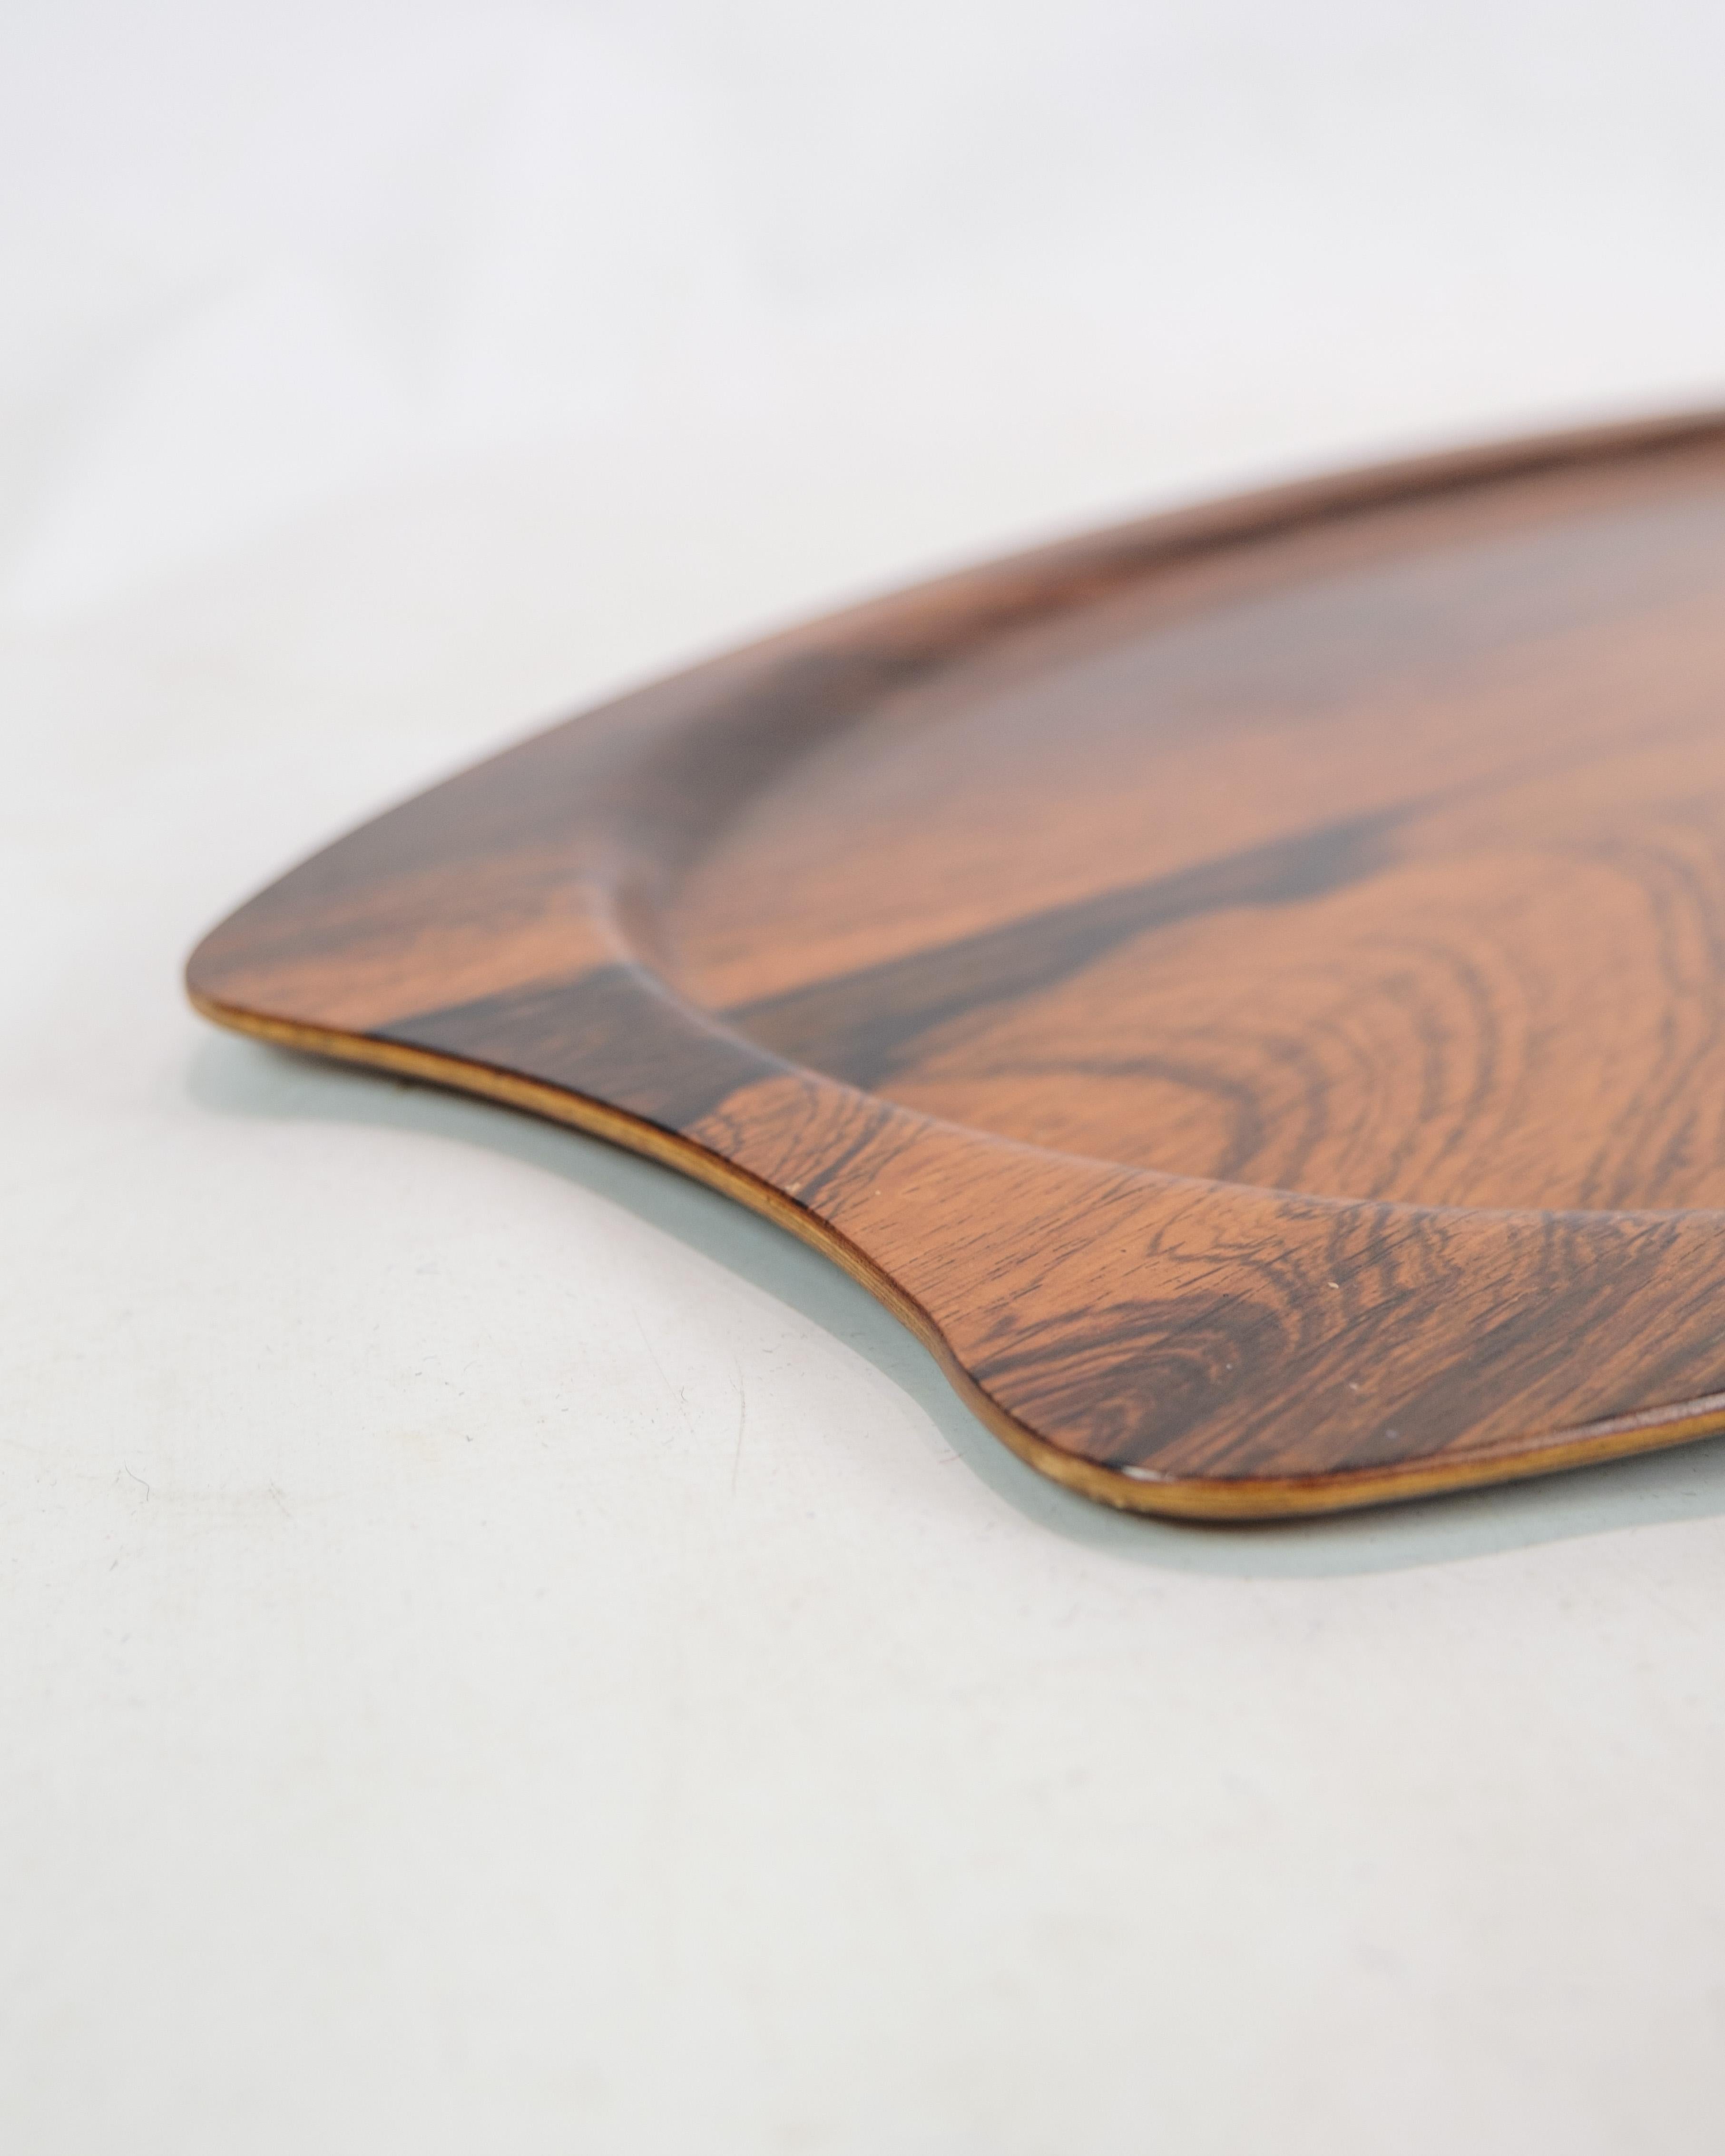 Dieses Serviertablett ist ein schönes Beispiel für dänisches Design aus den 1960er Jahren, hergestellt aus Palisanderholz und produziert von Silva. Bakken strahlt eine zeitlose Eleganz und Handwerkskunst aus, die für diese Ära des Möbeldesigns